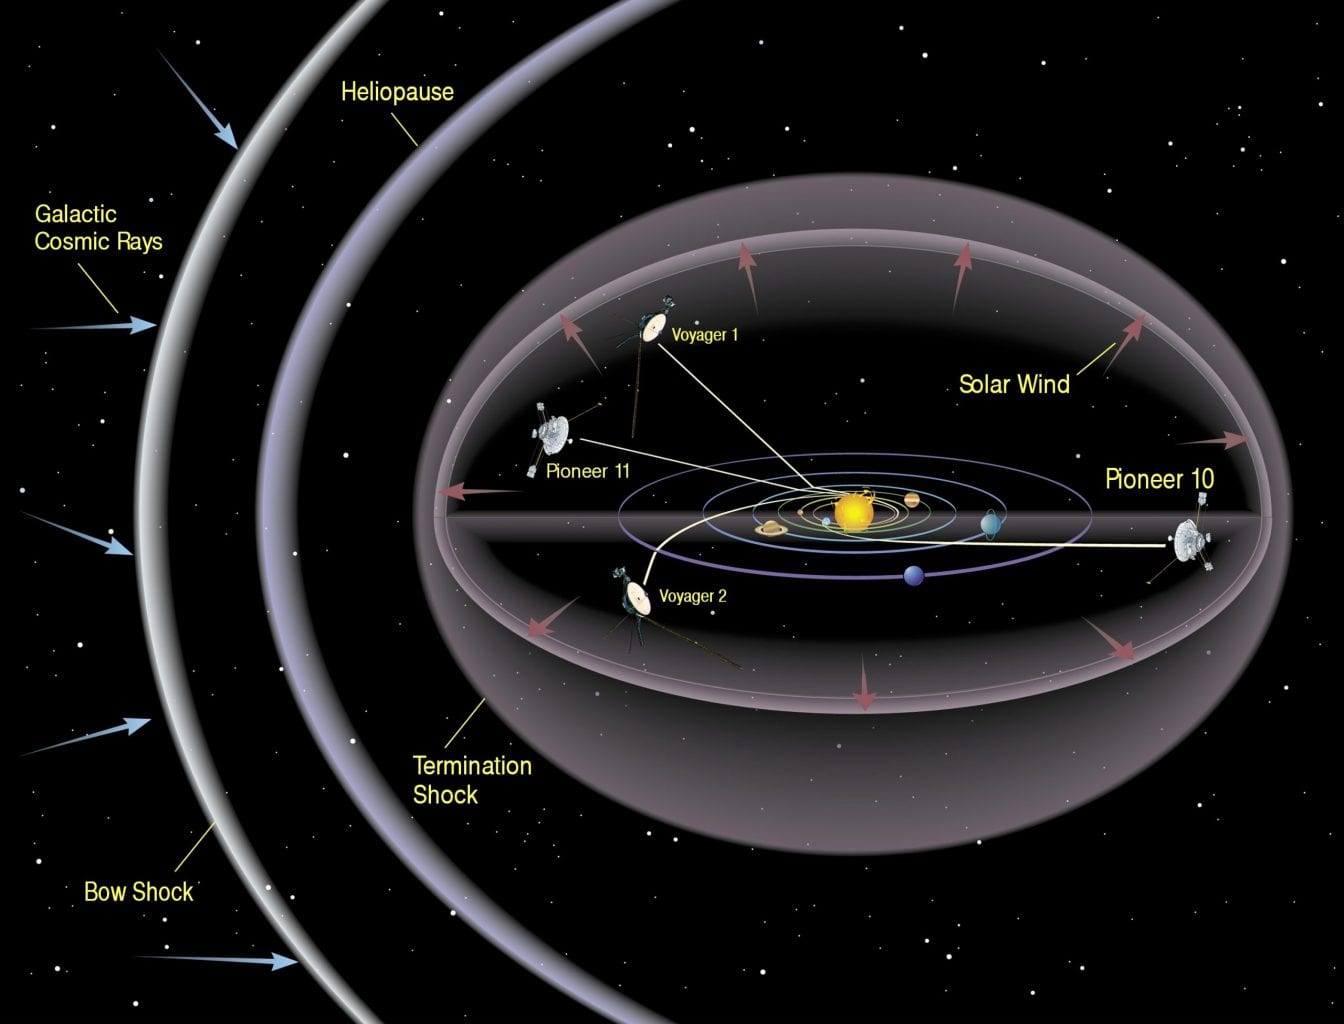 Схематическое изображение гелиосферы, планет Солнечной системы и четырех крайних космических кораблей (из пяти New Horizons не показаны). Предоставлено: НАСА.